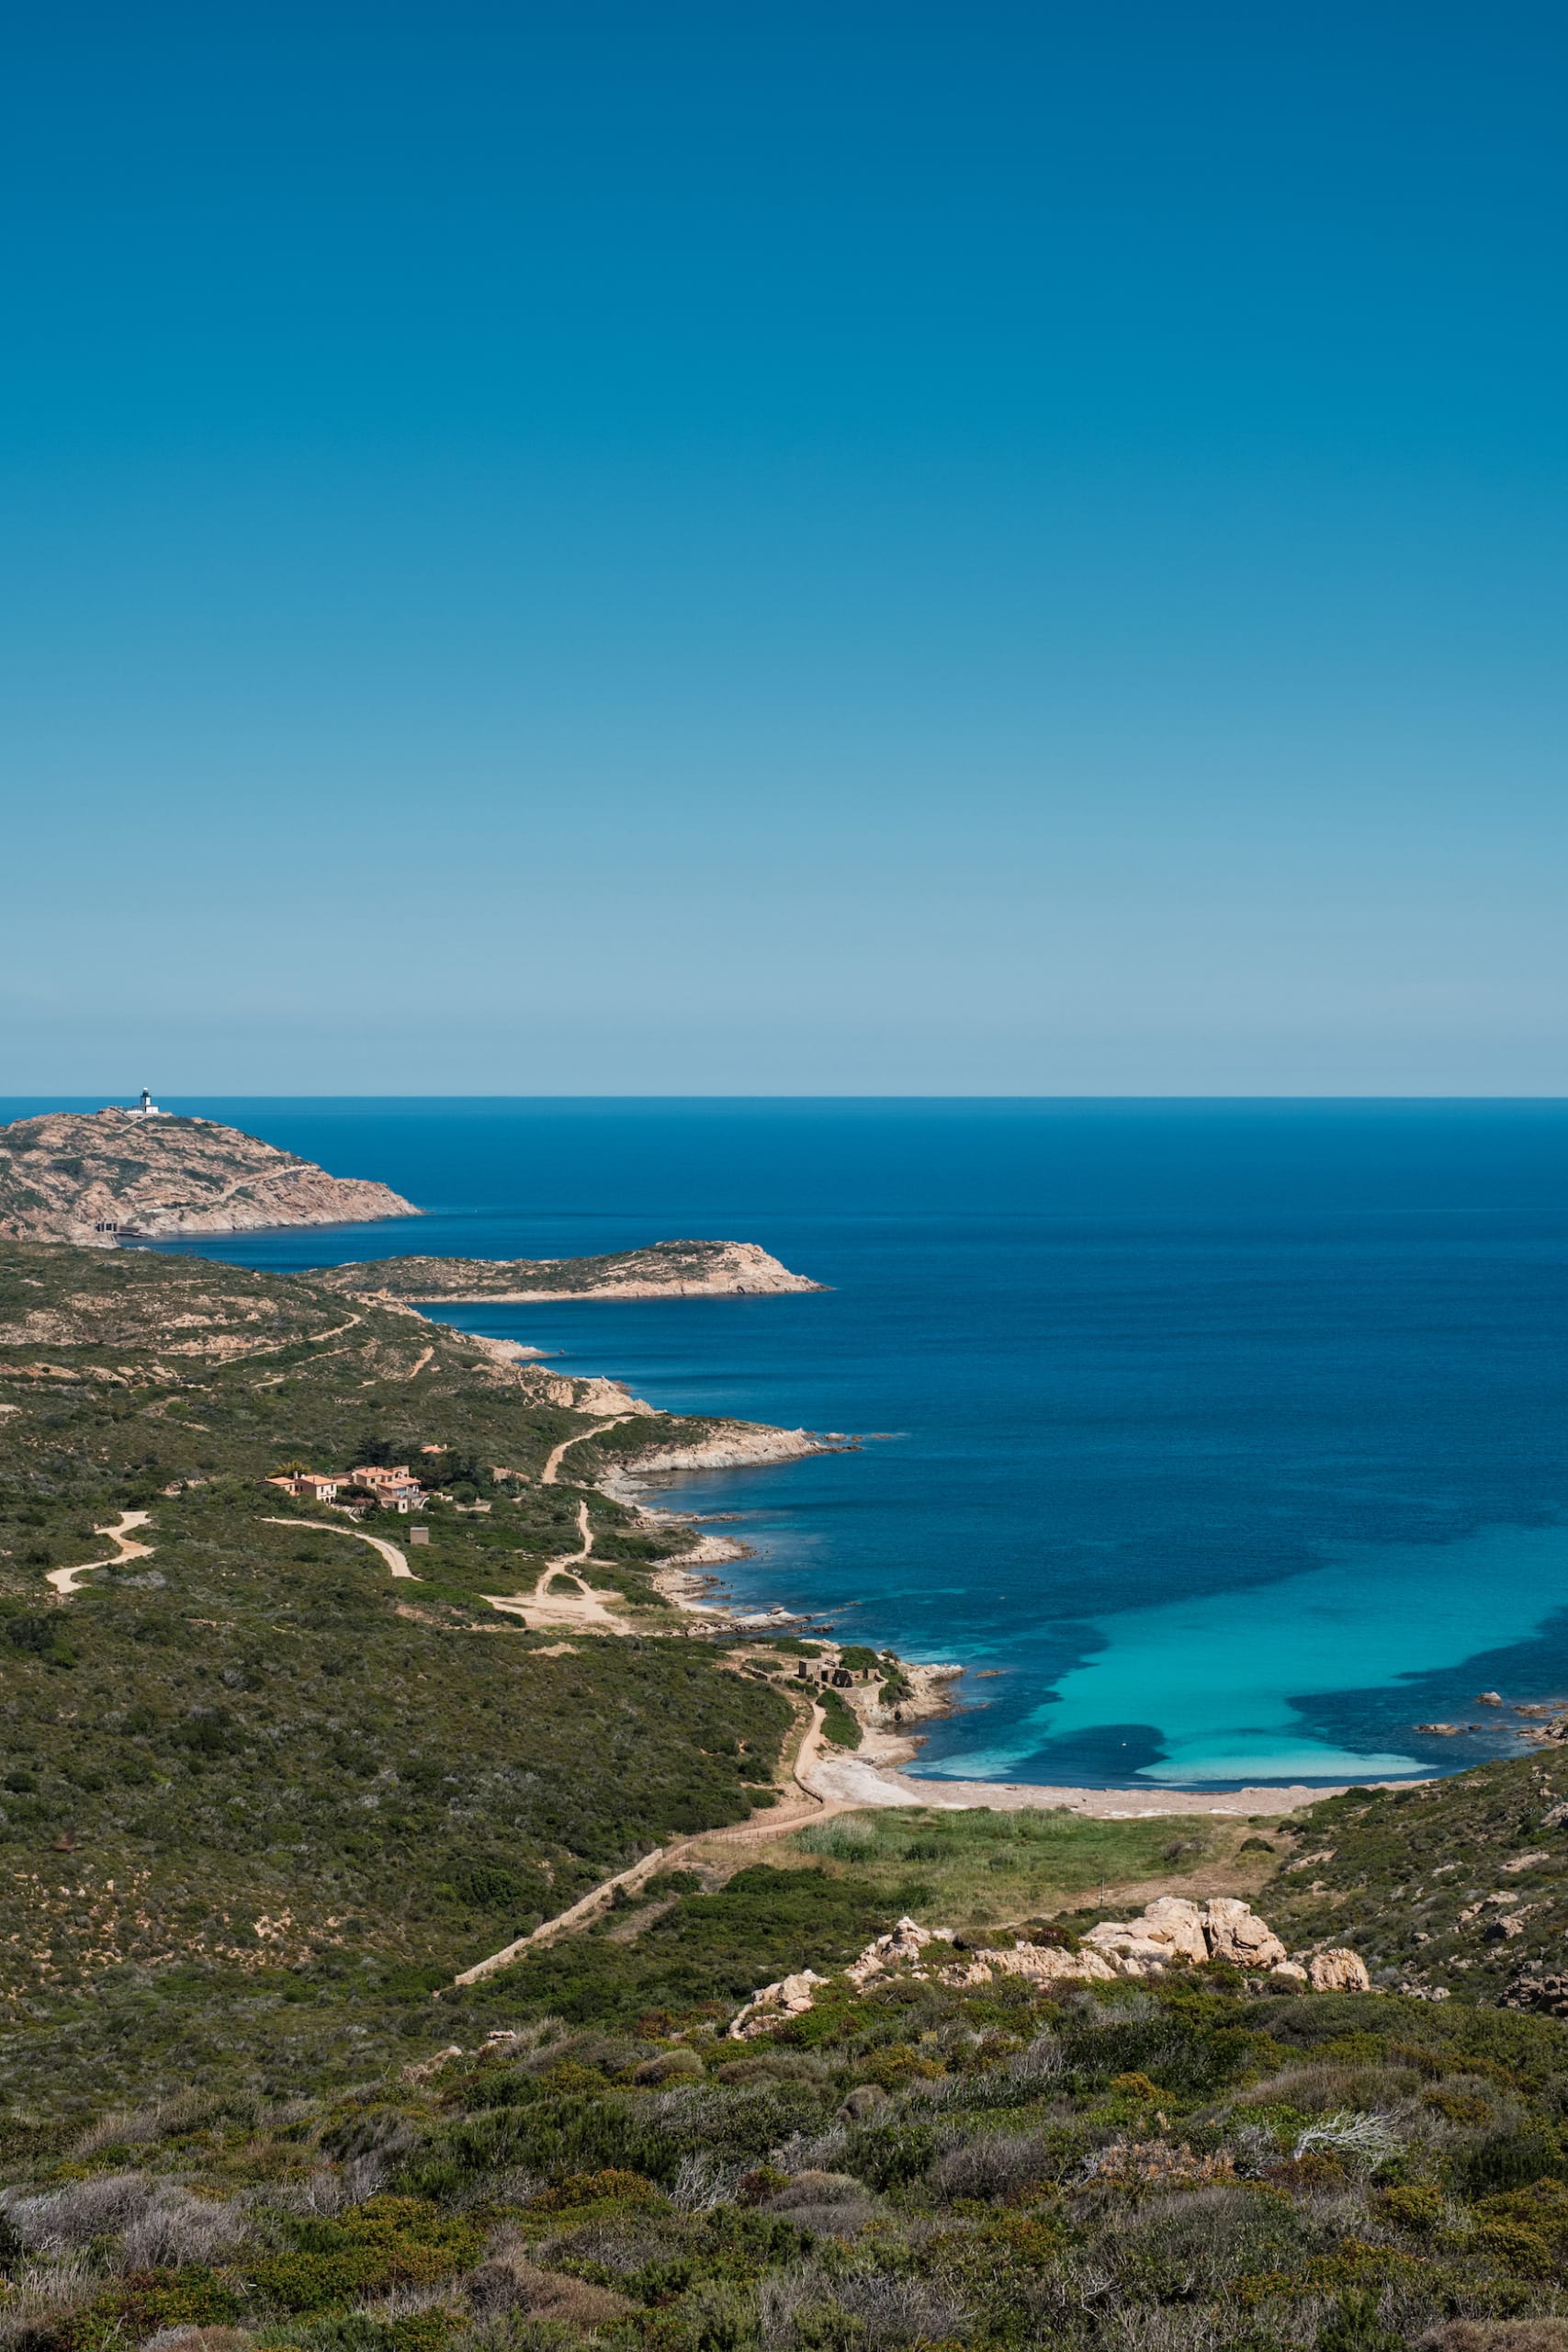 Türkisfarbenes Mittelmeer am Plage de l'Alga an der felsigen Küste von La Revellata bei Calvi in der Balagne auf Korsika